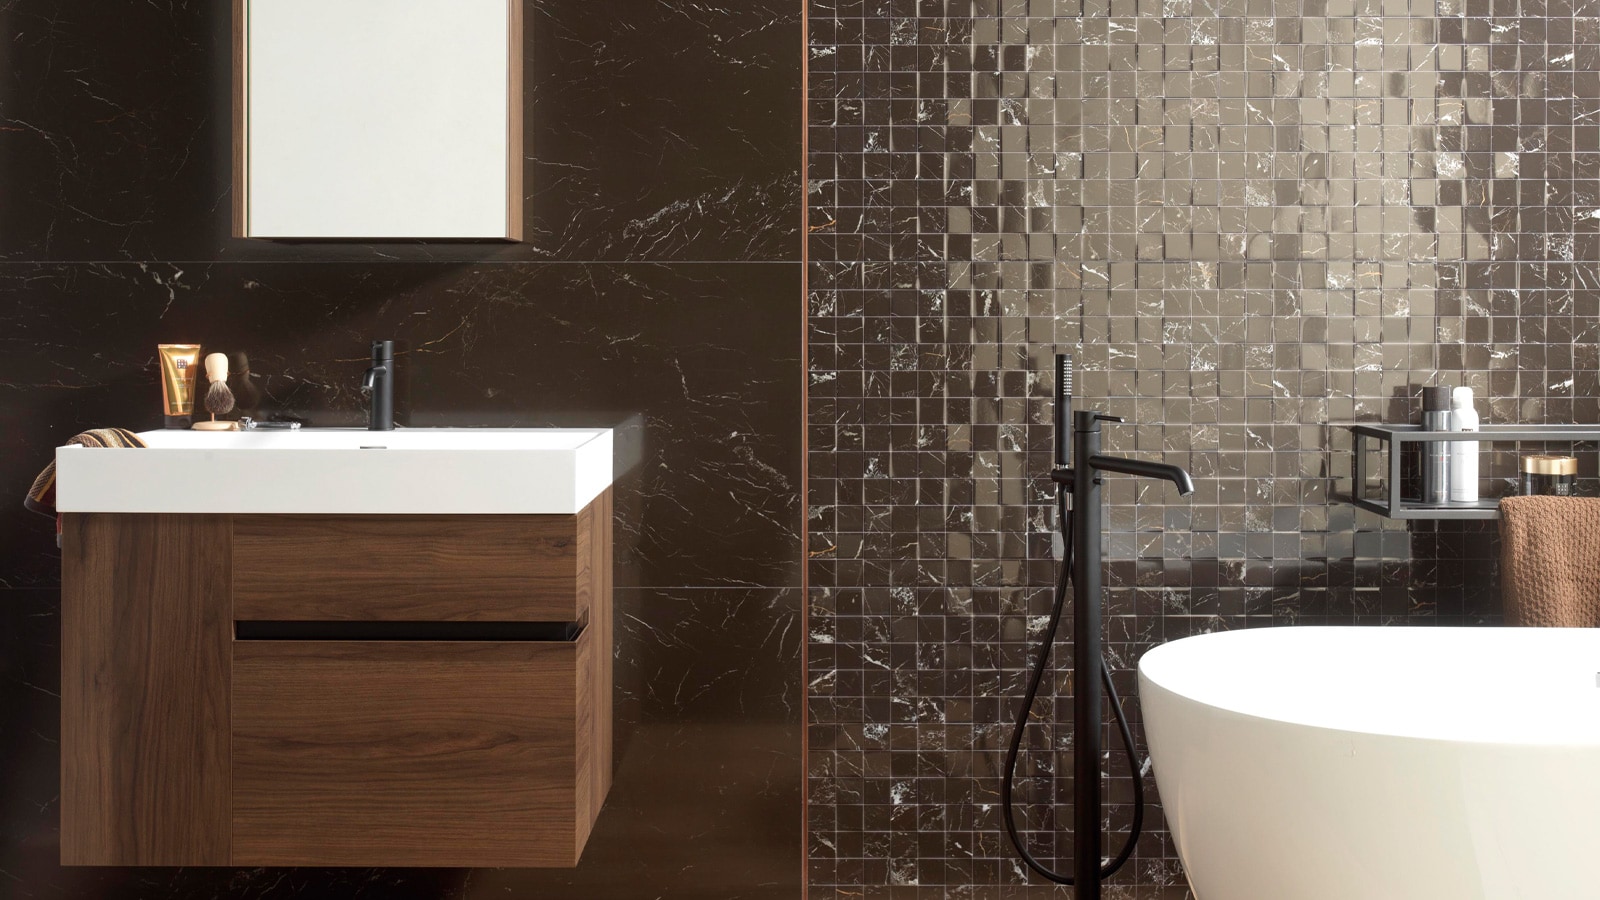 Умные кухни и ванные комнаты в натуральном стиле — основа бренда Gamadecor